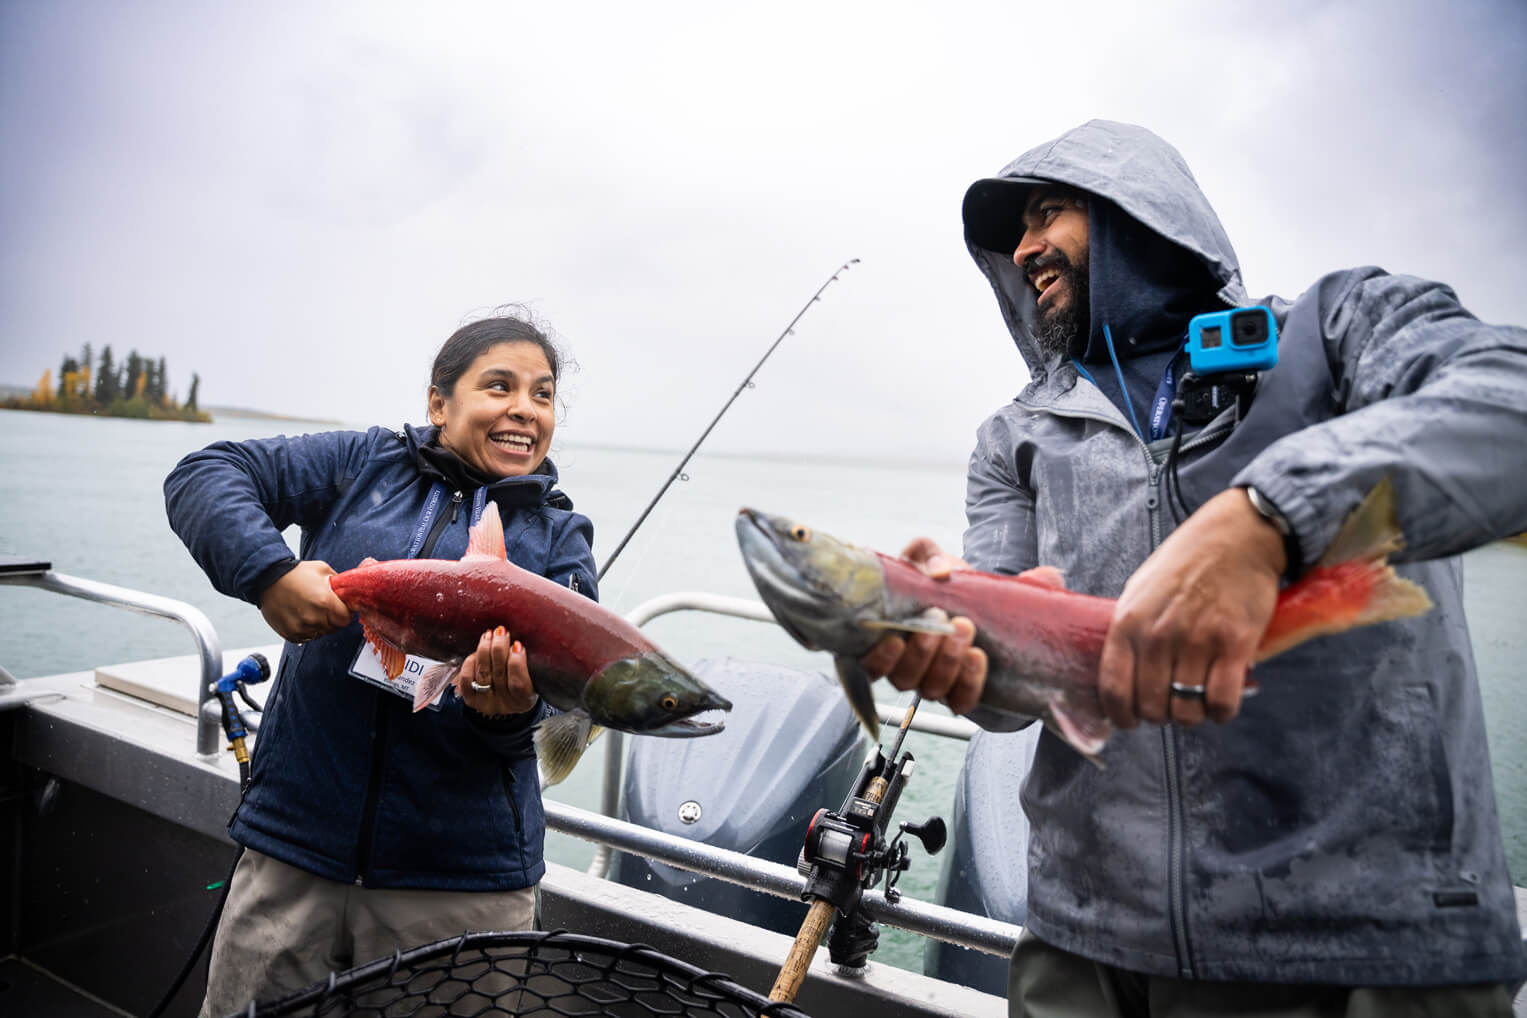 Las parejas se acercan por medio de las actividades como pescar salmón juntos.